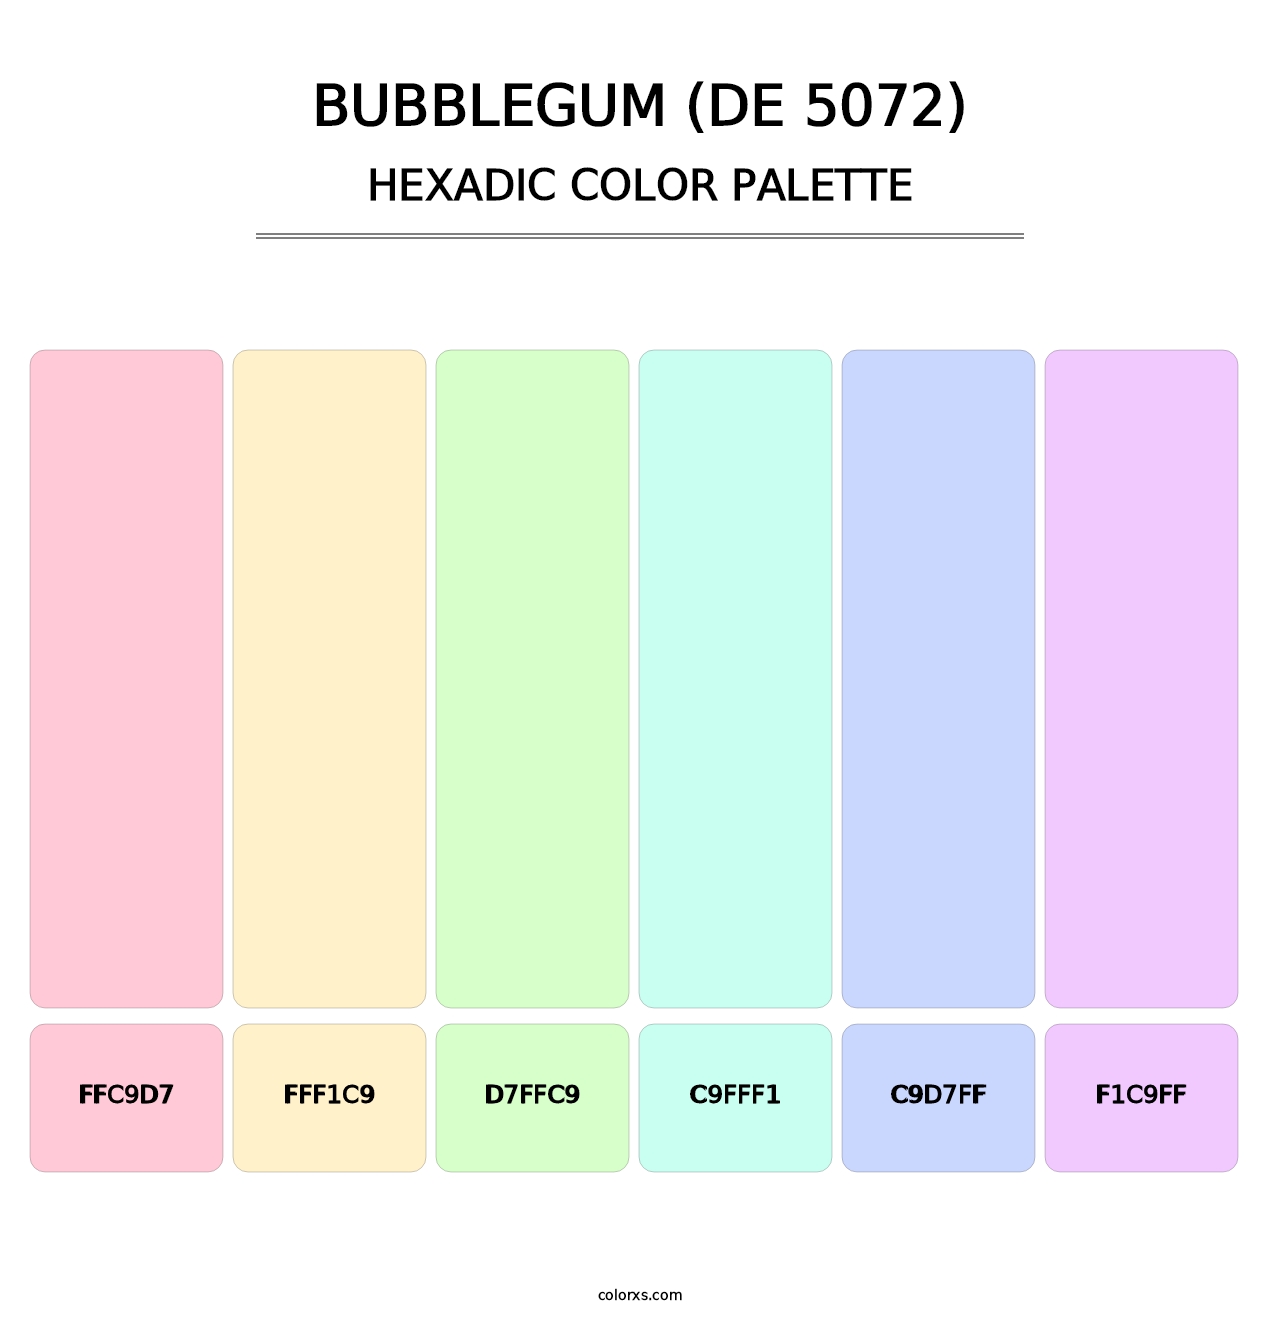 Bubblegum (DE 5072) - Hexadic Color Palette